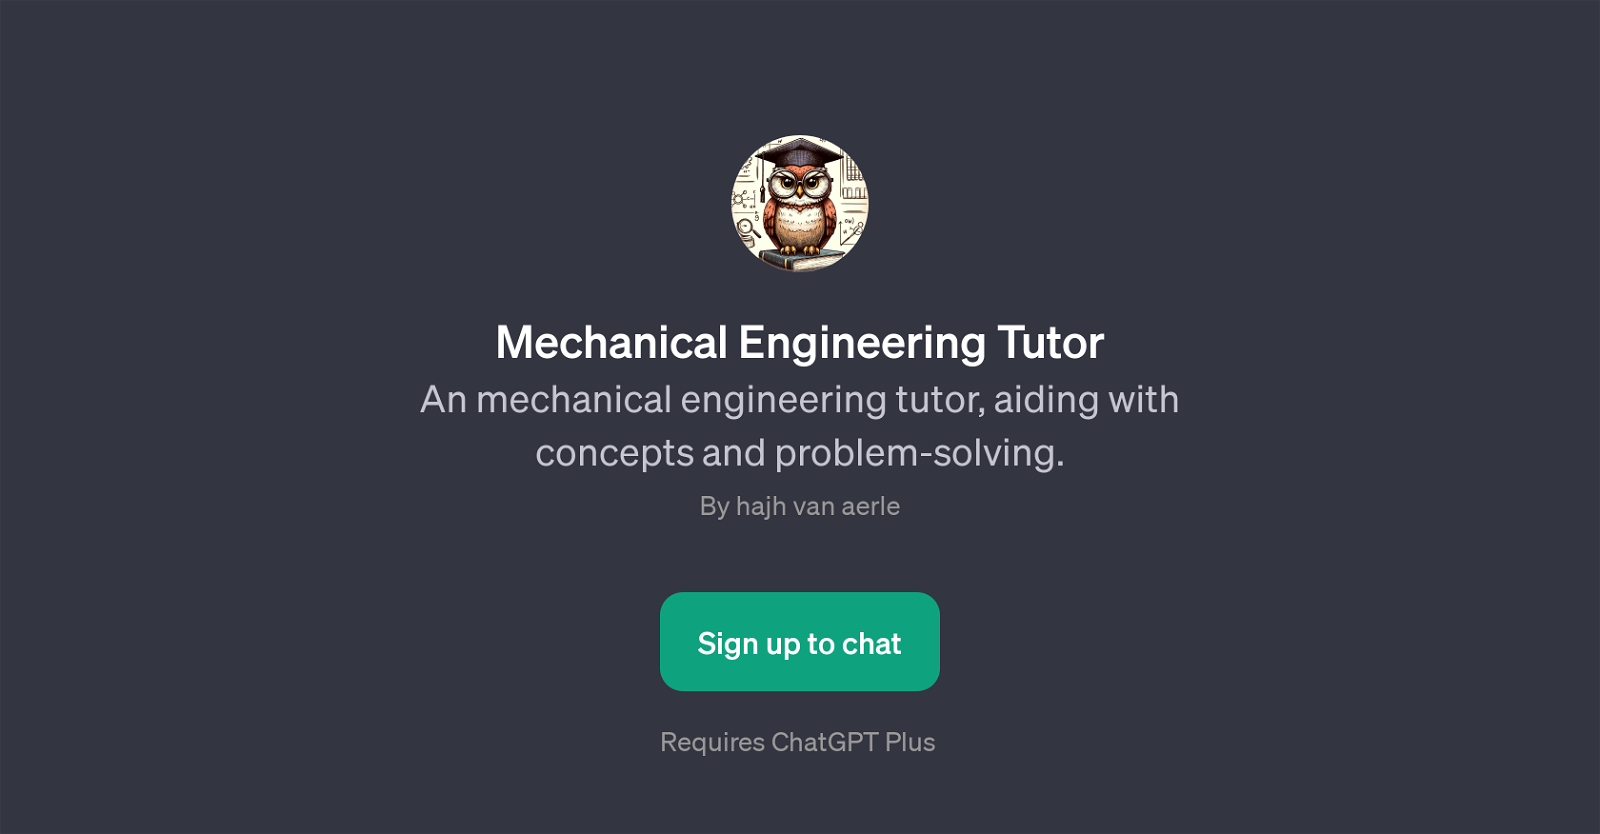 Mechanical Engineering Tutor website